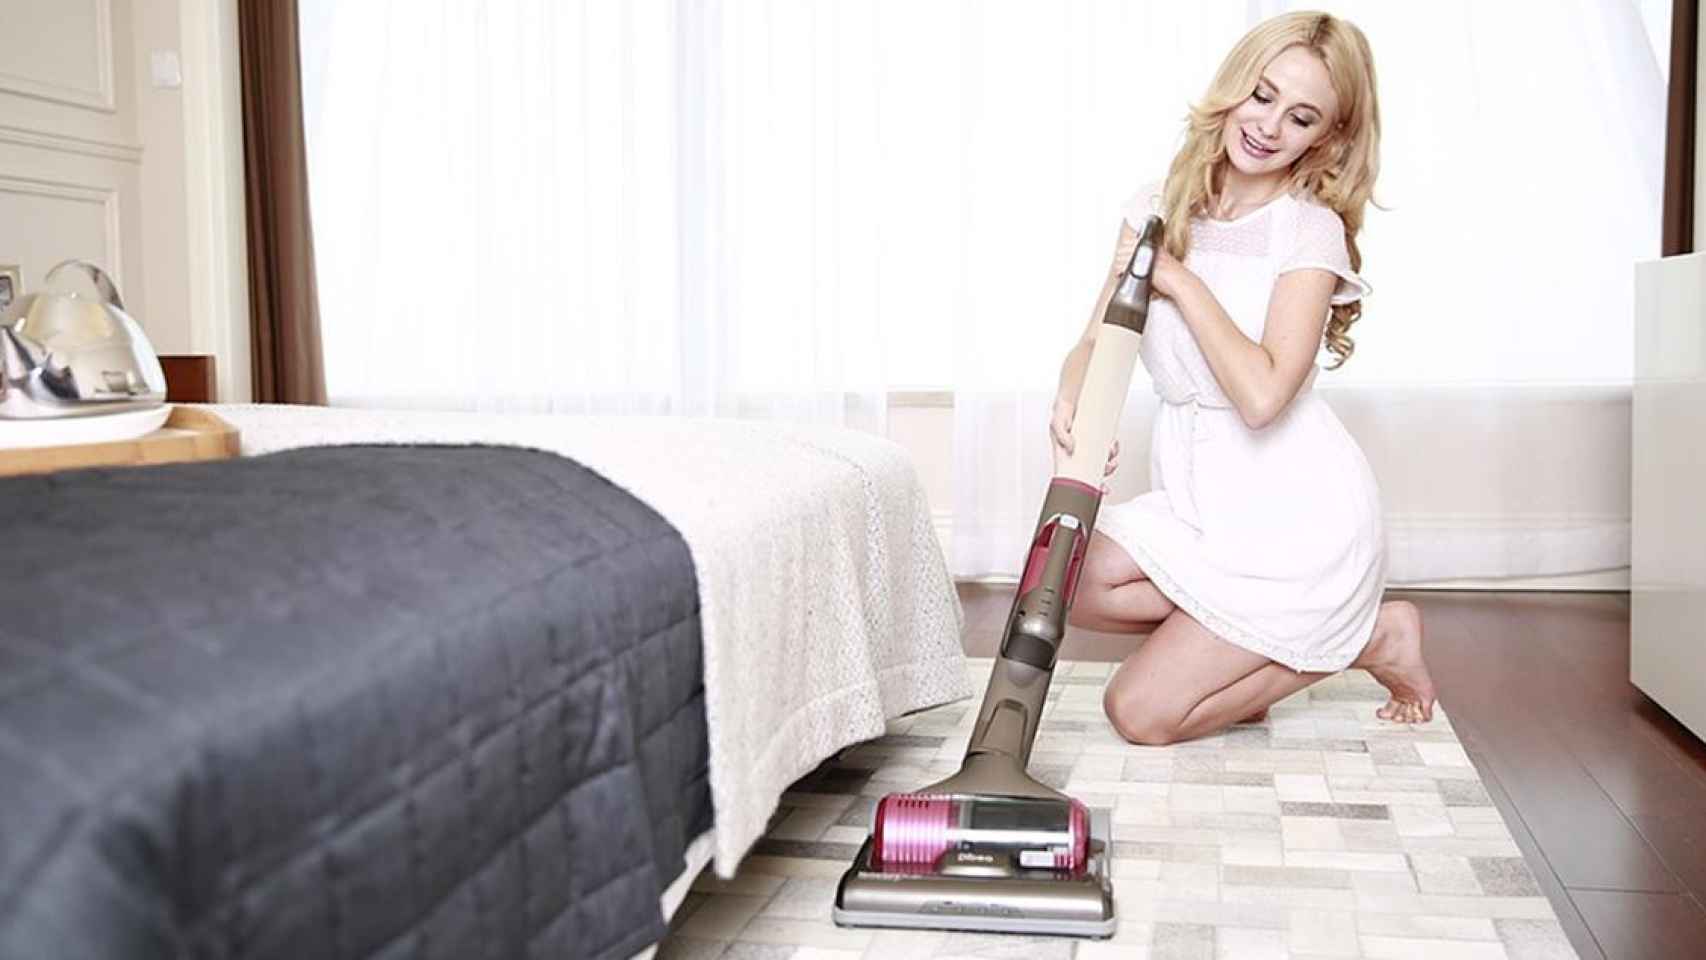 Un hombre ofrece trabajo a chicas para que limpien su casa en lencería